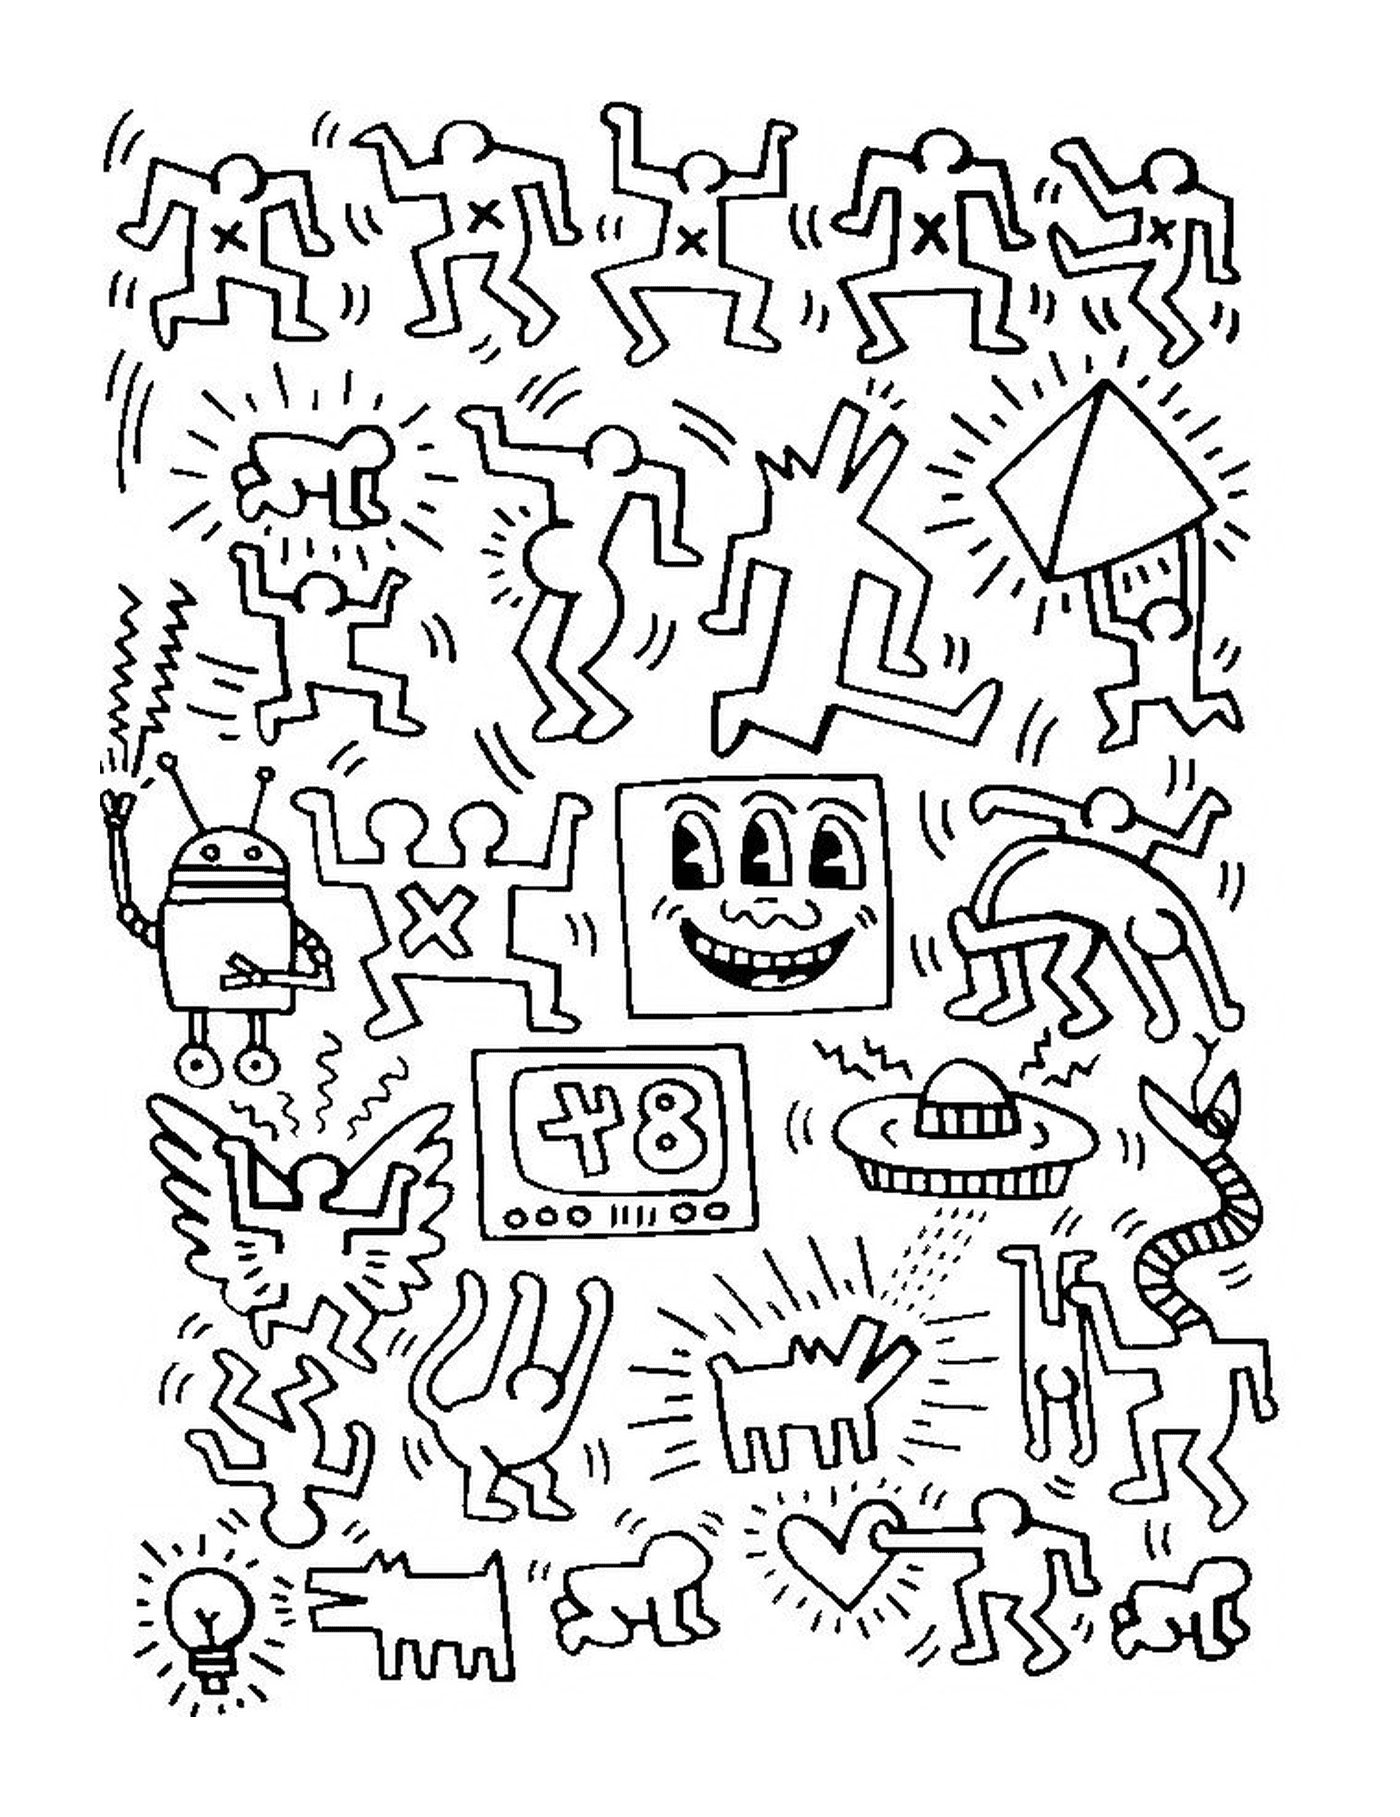  eine Gruppe von Menschen nach Keith Haring 